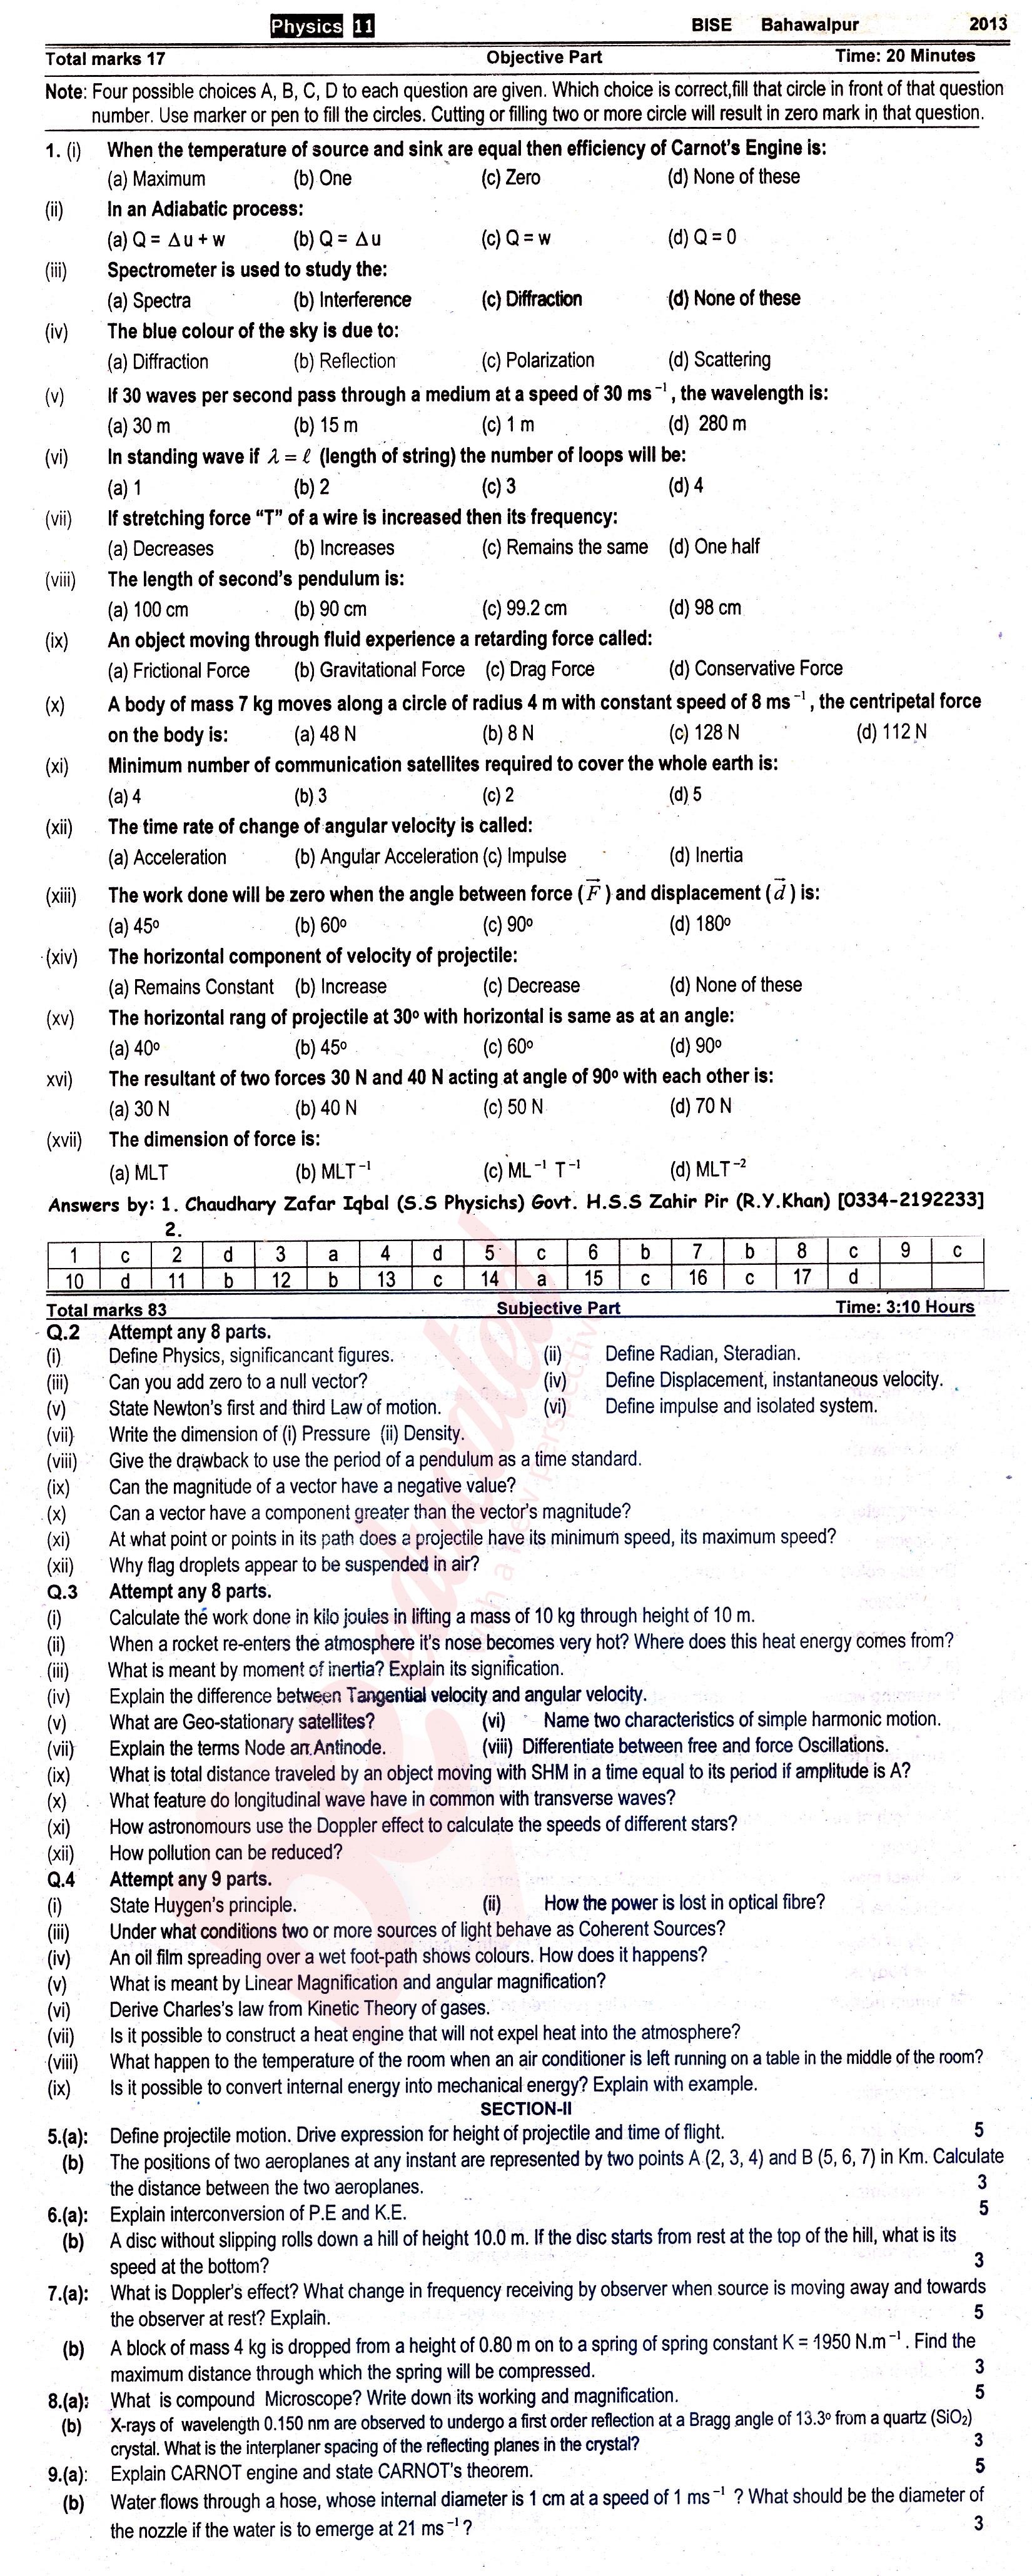 Physics FSC Part 1 Past Paper Group 1 BISE Bahawalpur 2013